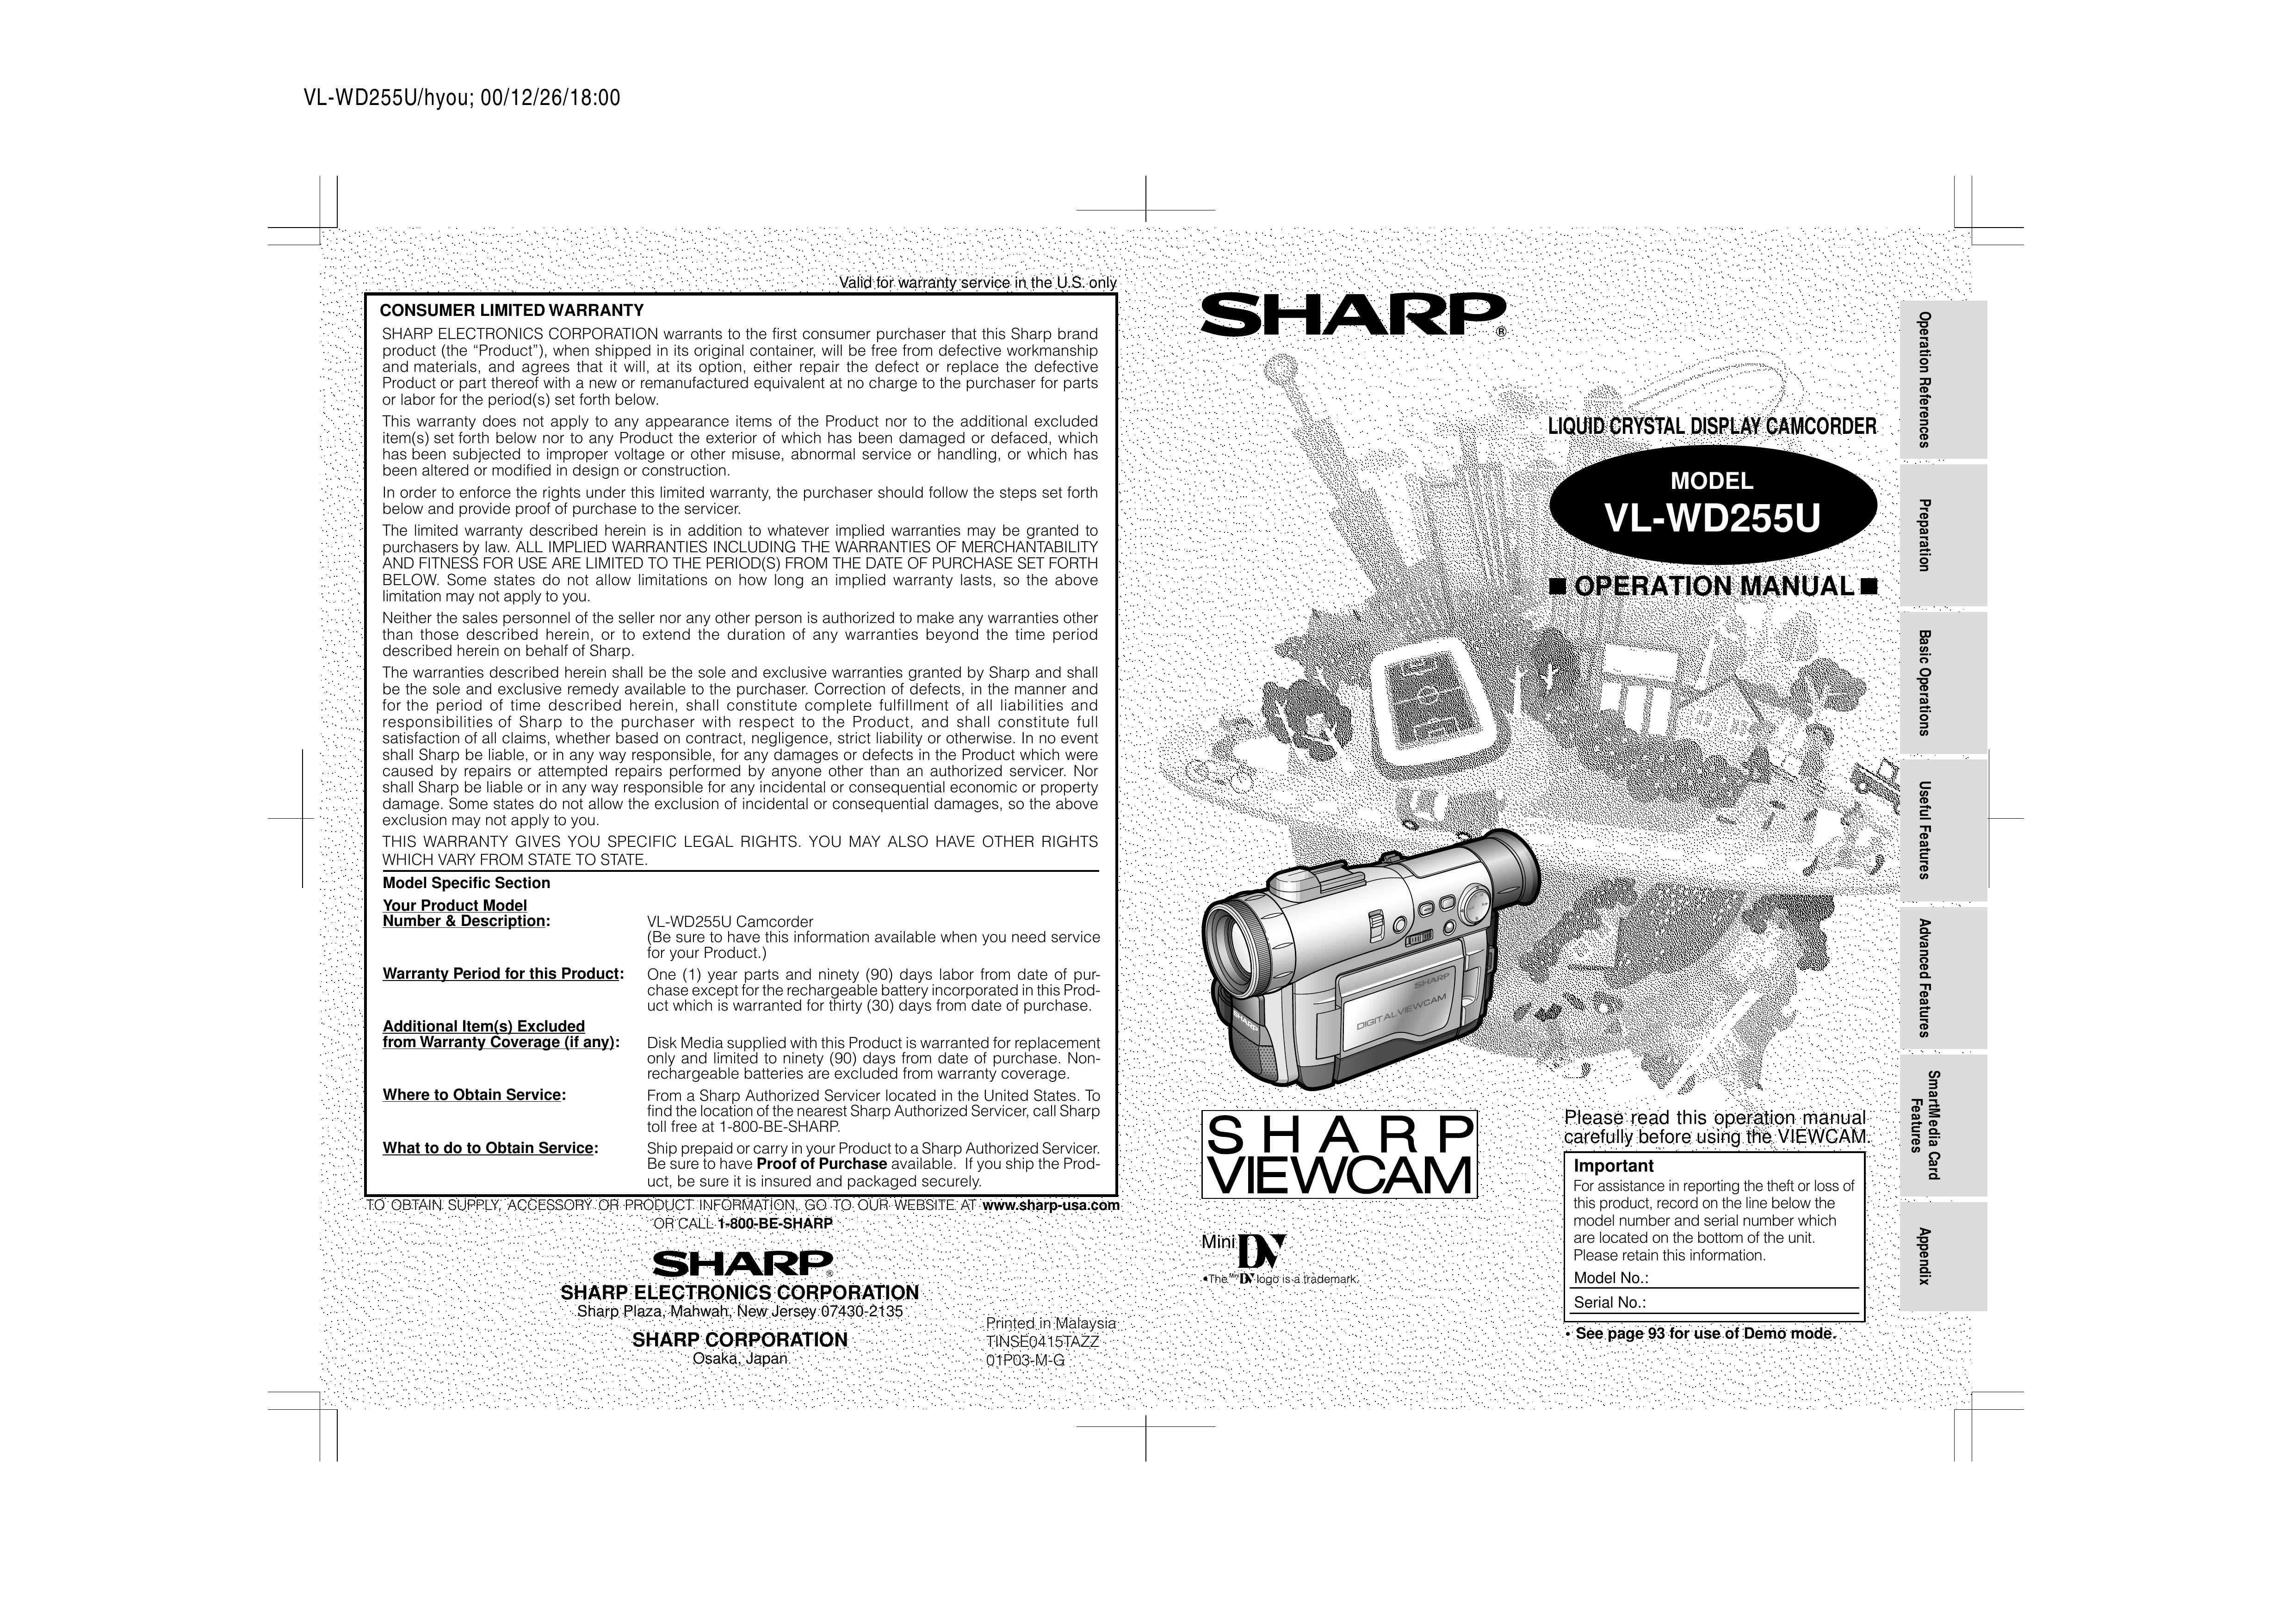 Sharp VL-WD255U Camcorder User Manual